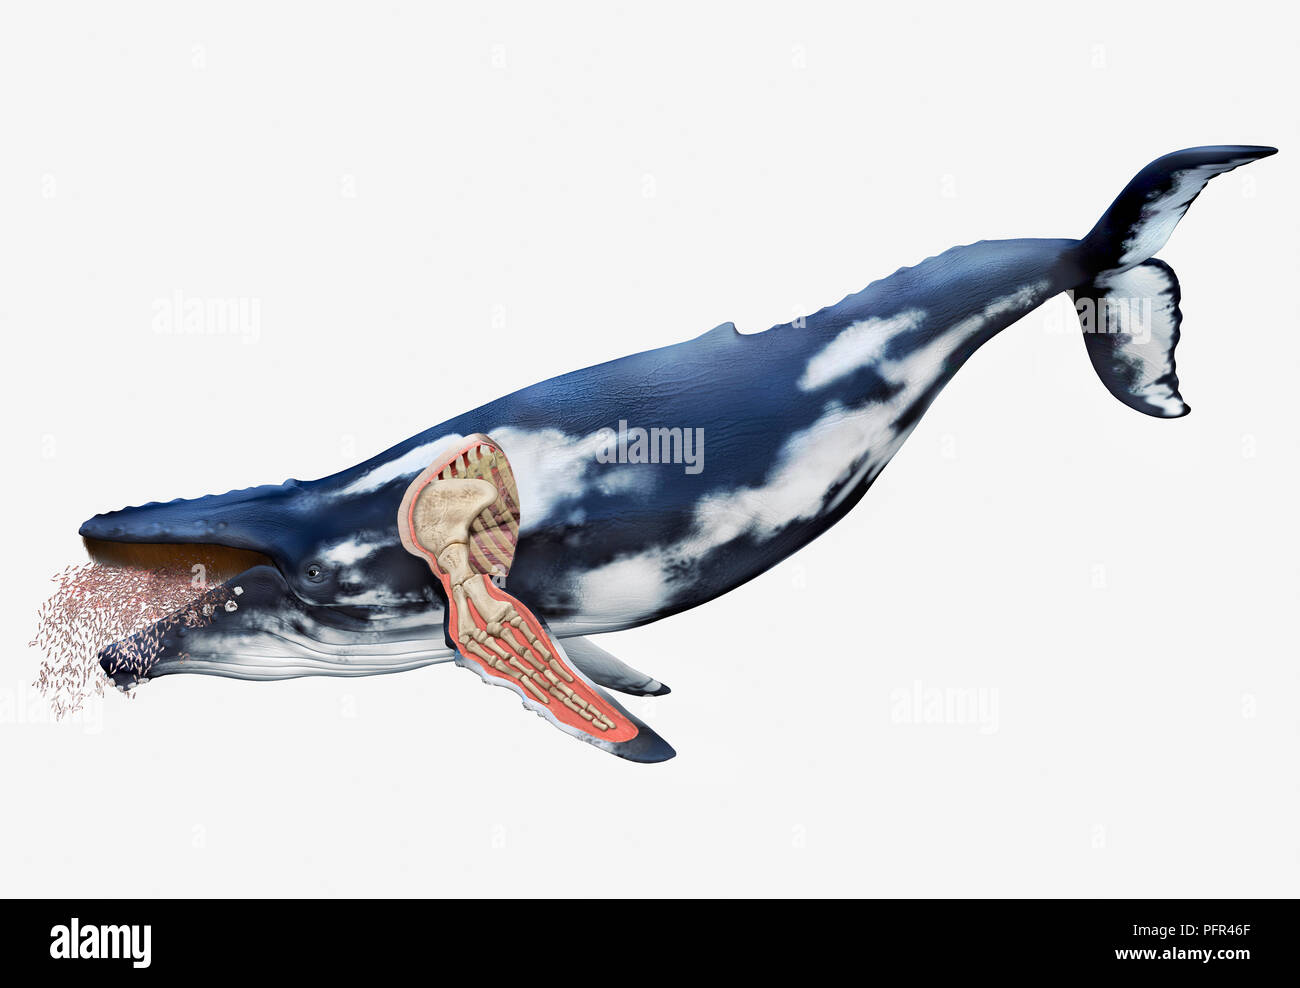 Digitale Illustration von Whale mit Knochen Struktur der Flossen, sichtbar, Schnittzeichnung Stockfoto